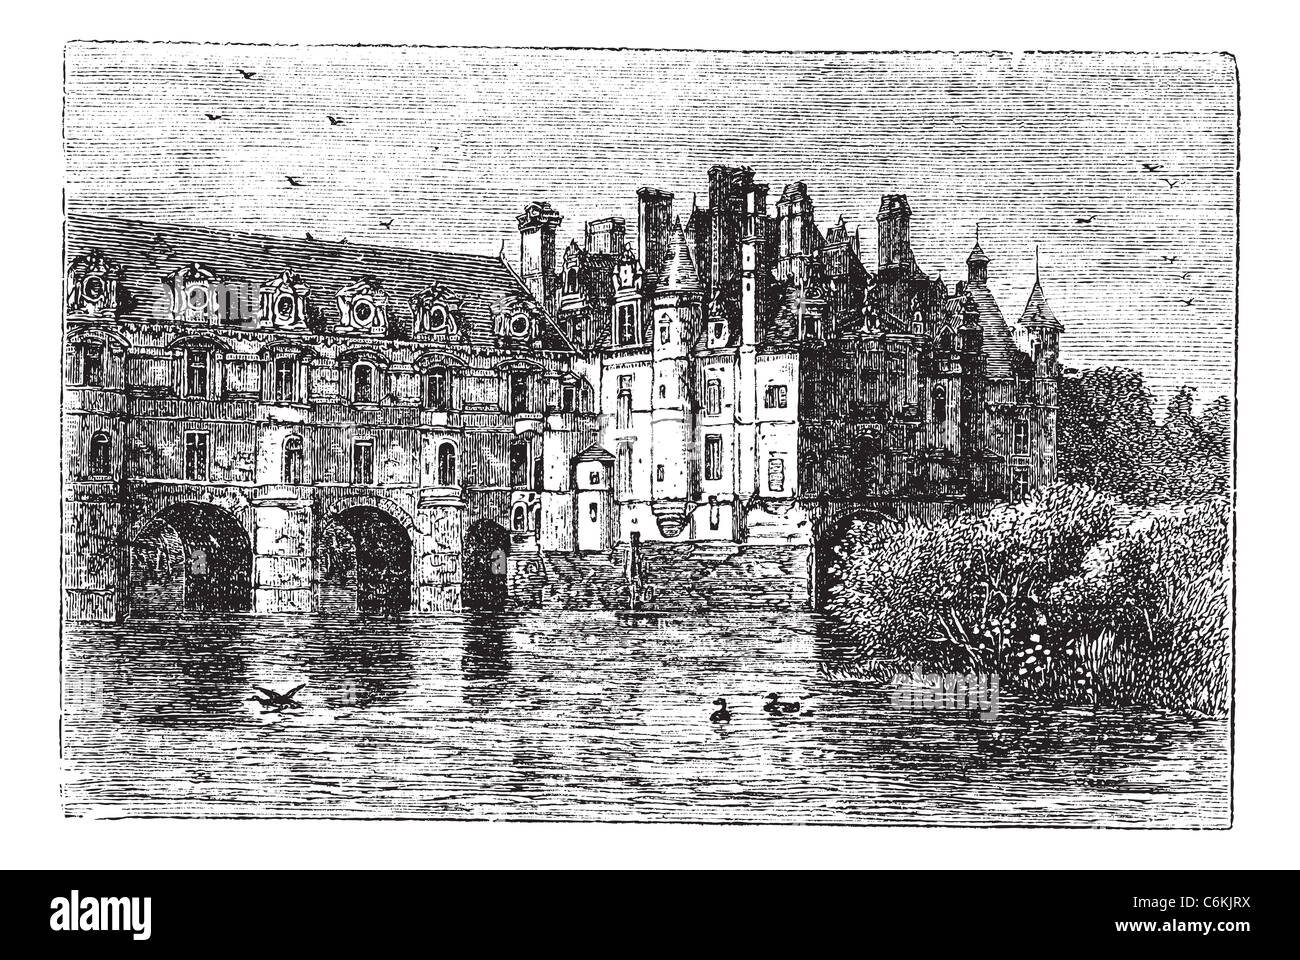 Castello di Chenonceau, in Chenonceaux, Francia, durante il 1890s, vintage incisione. Vecchie illustrazioni incise del castello di Chenonceau. Foto Stock